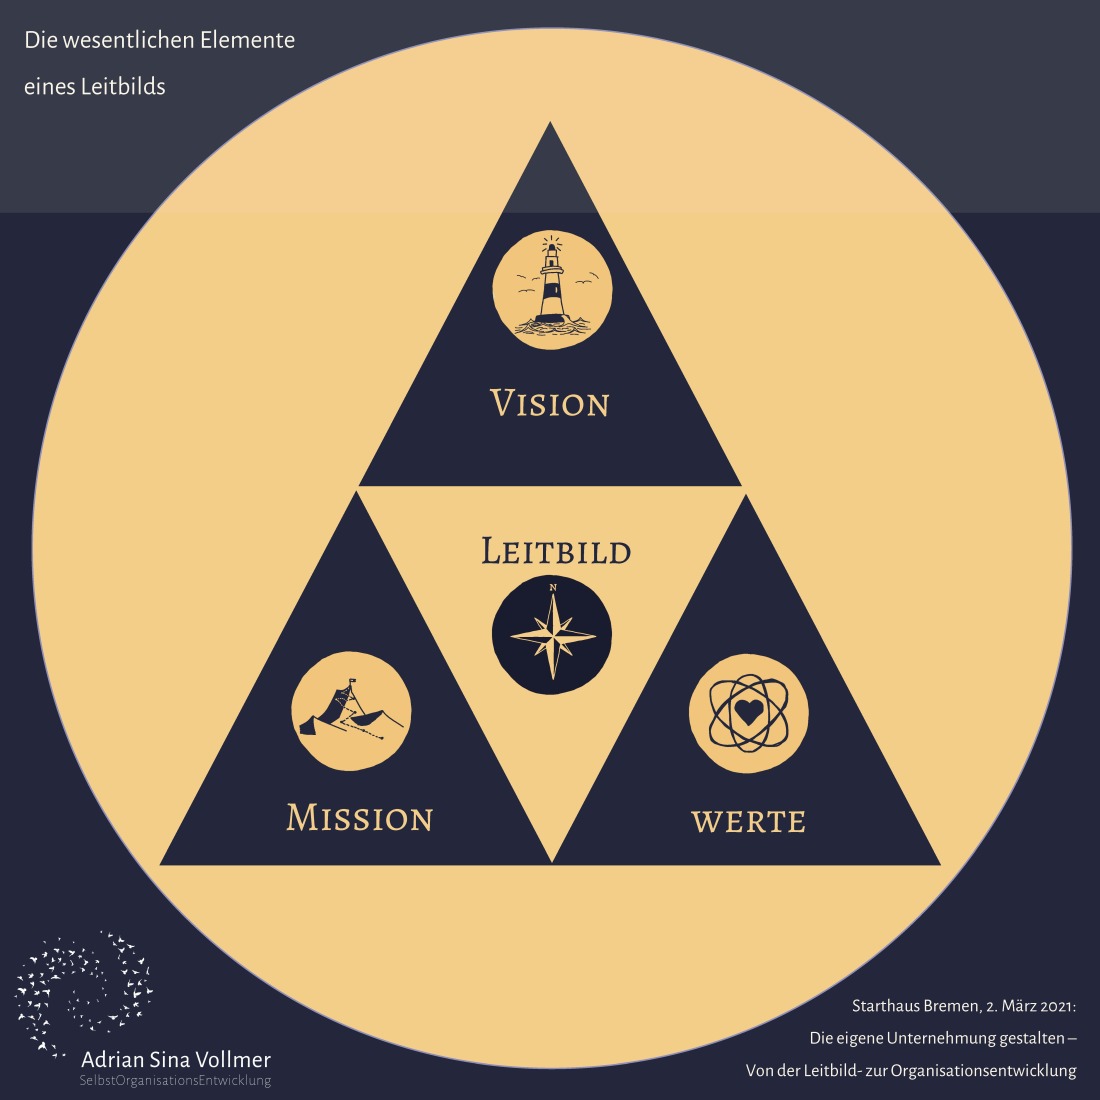 Die wesentlichen Elemente eines Leitbilds sind: Vision, Mission und Werte.